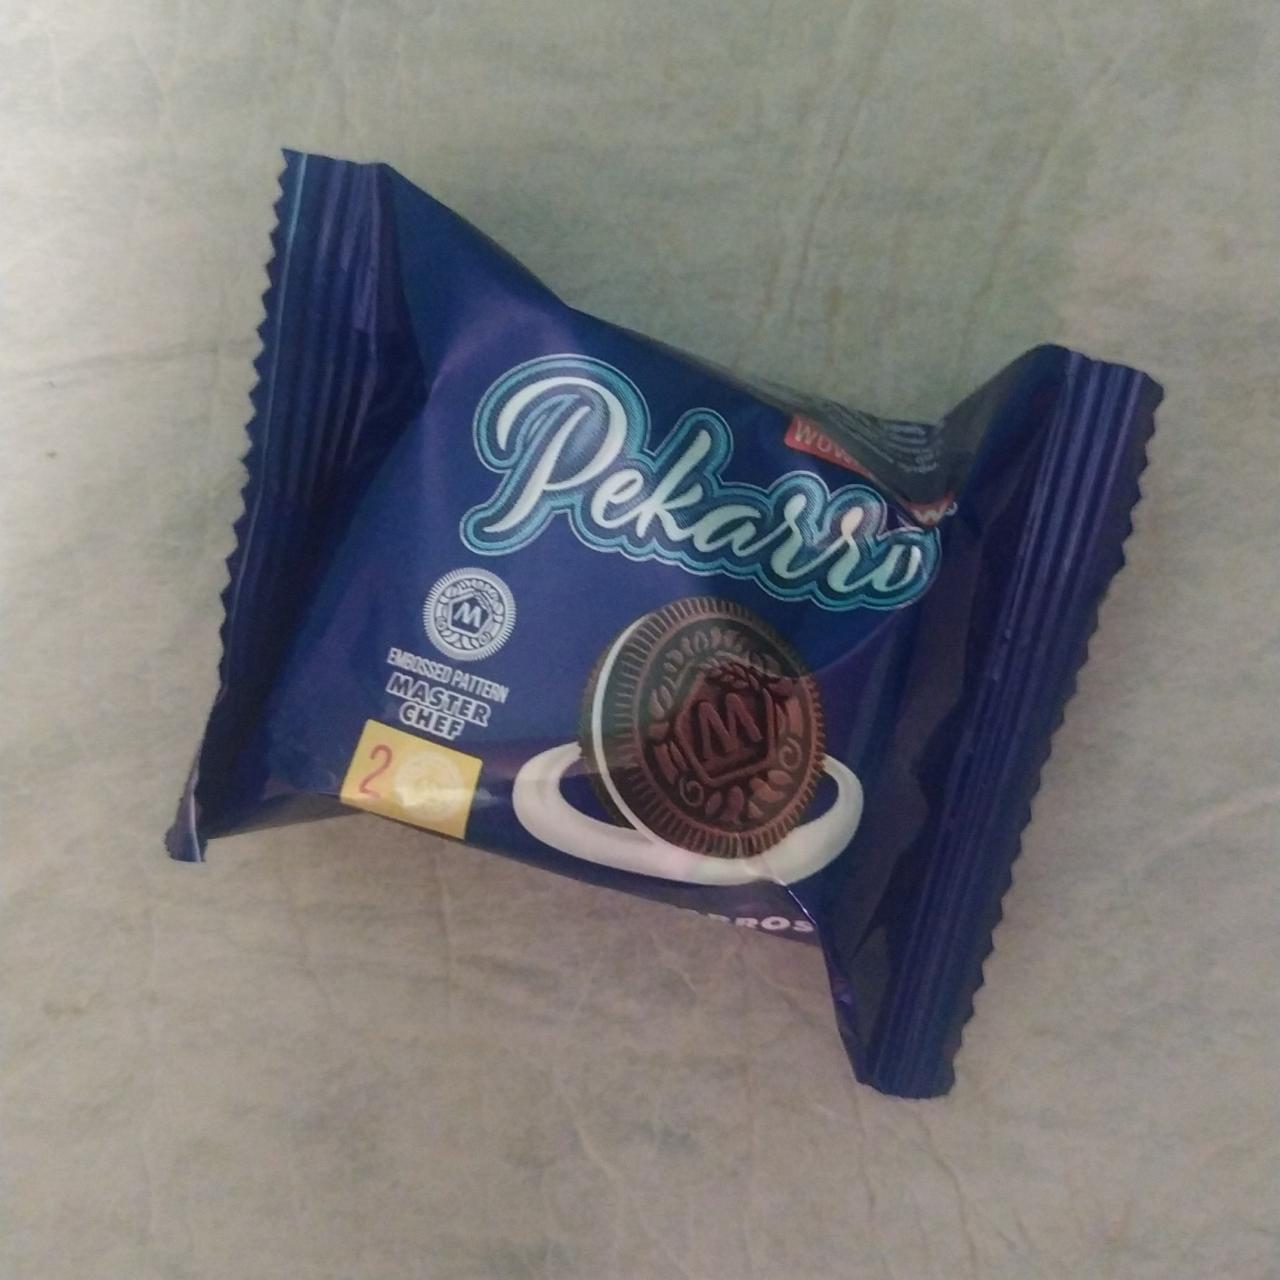 Фото - Печенье сахарное с какао и начинкой с ванильным вкусом Pekarro